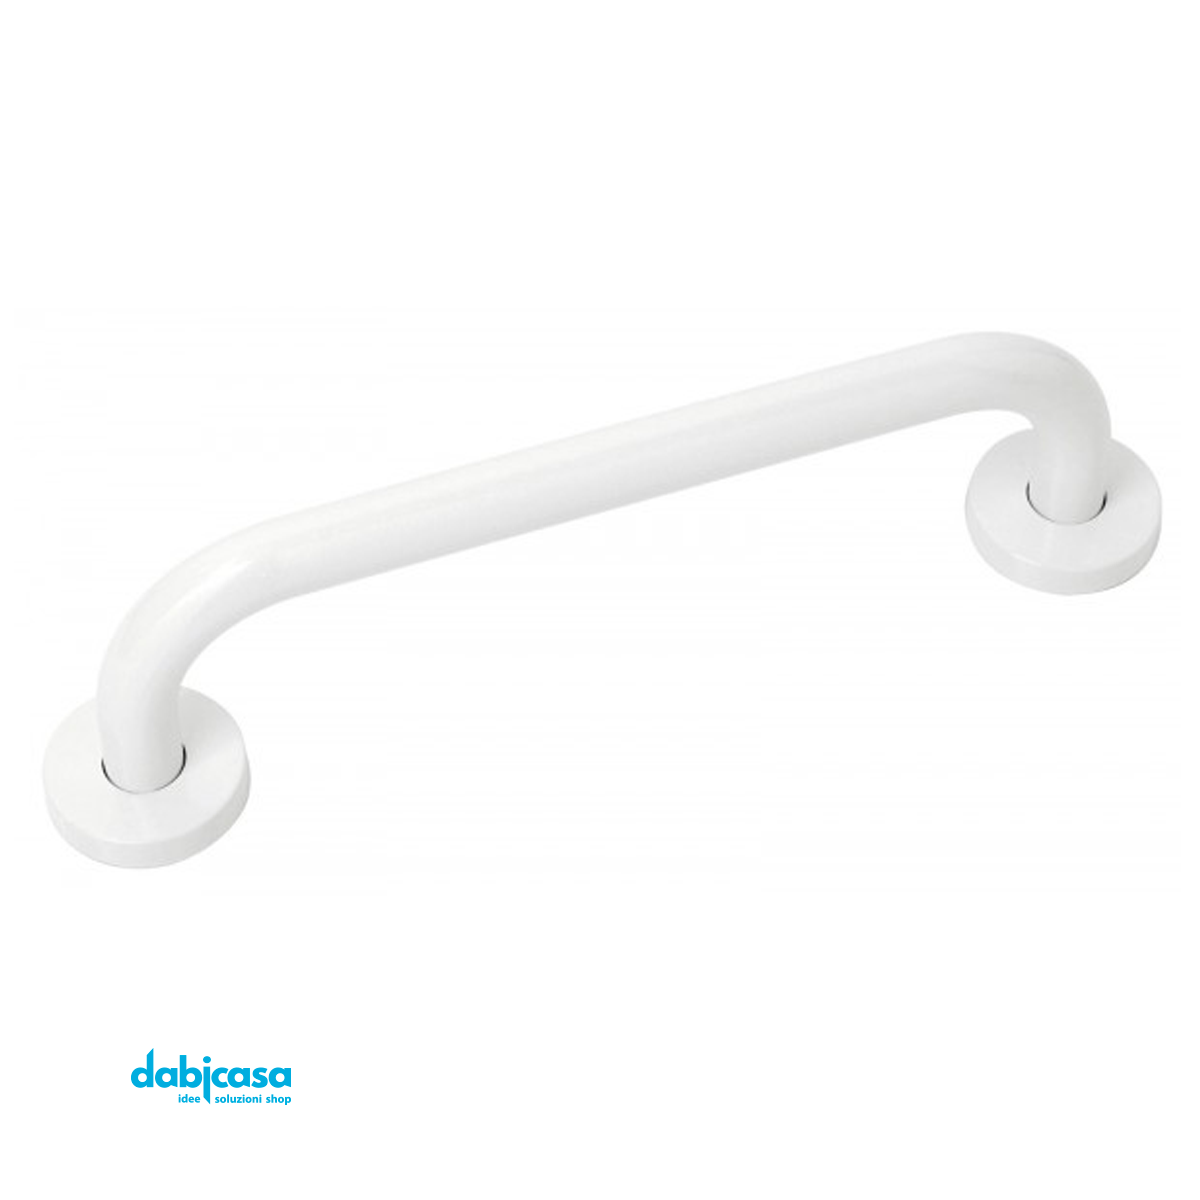 Maniglione "Linea Comfort" in ABS Colore Bianco 37 cm freeshipping - Dabicasa